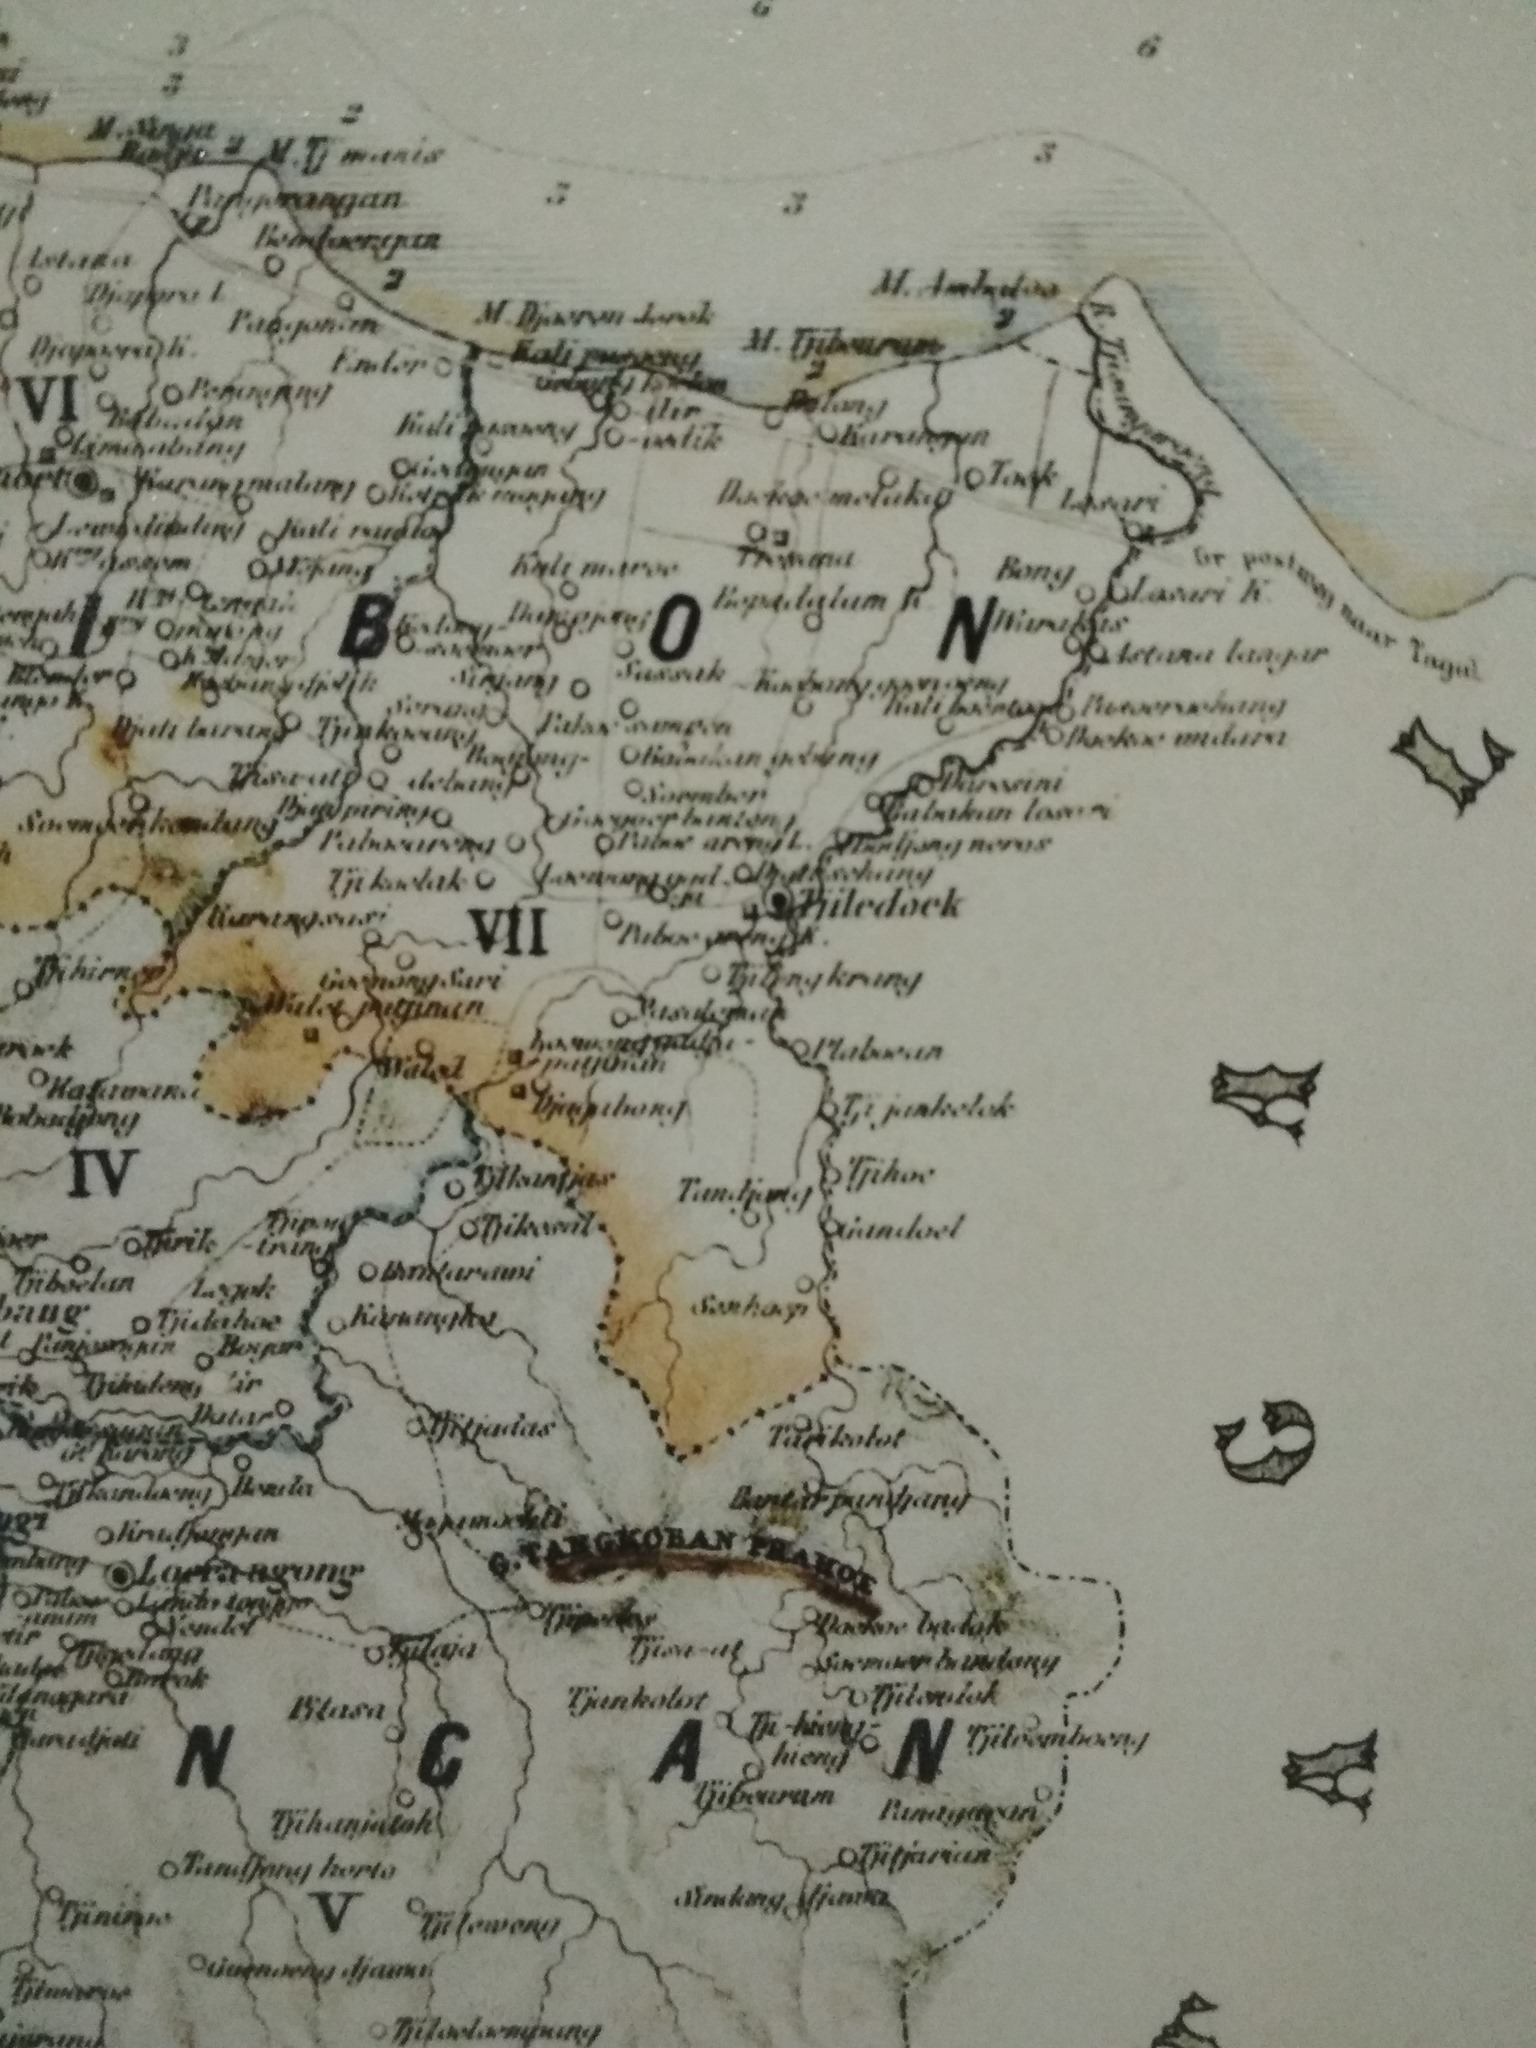 Kaart van De Residentie Cheribon in de jaren 1833-36 door W.F. Versteeg